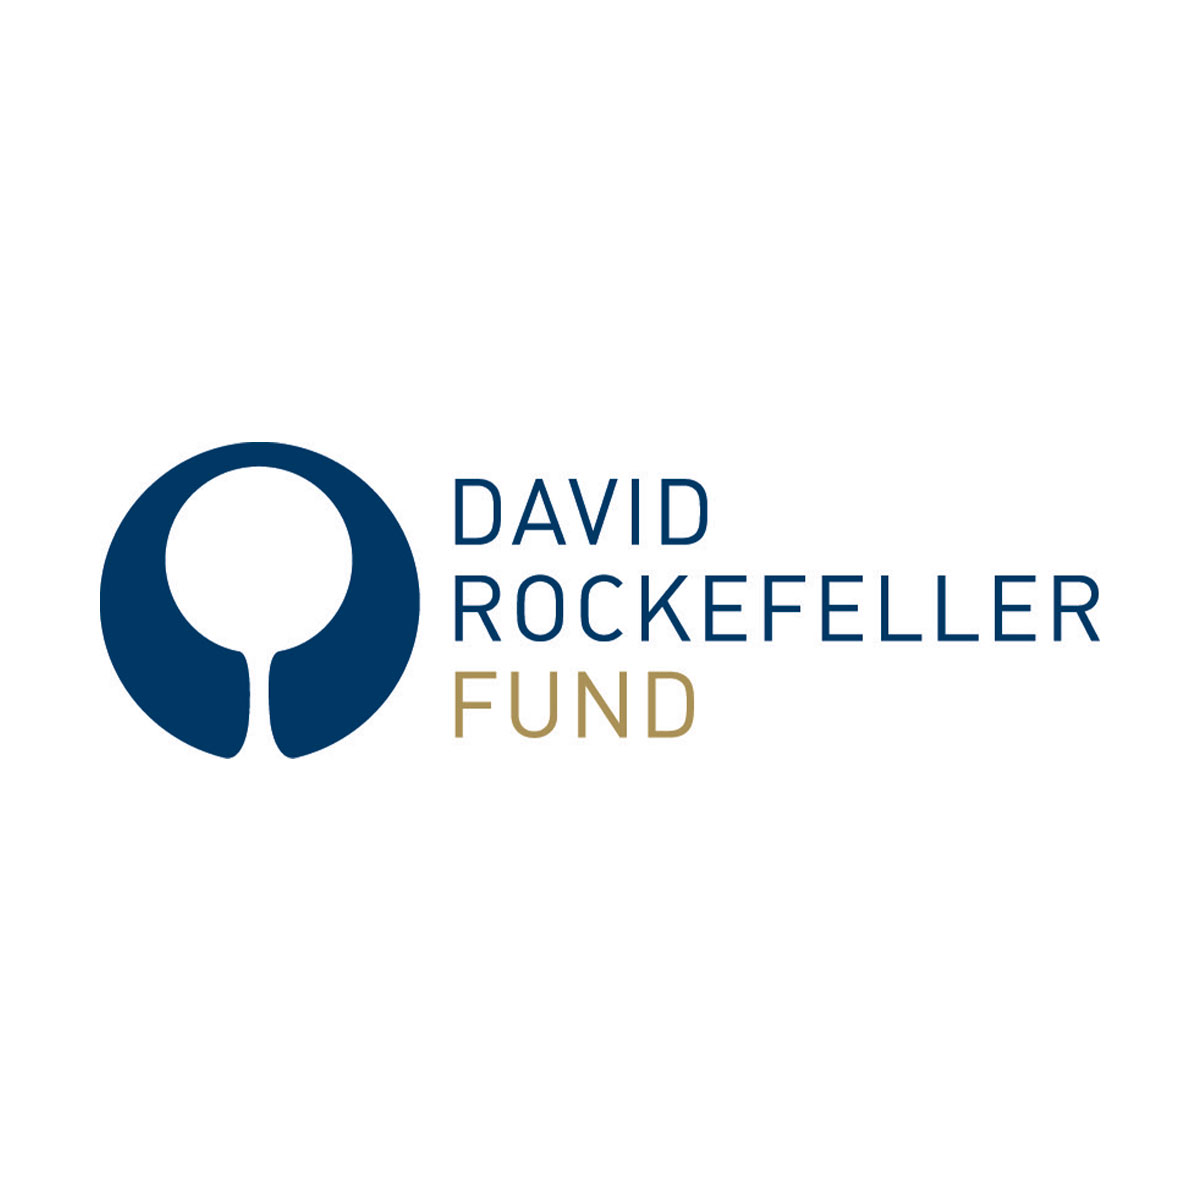 David Rockefeller Fund logo